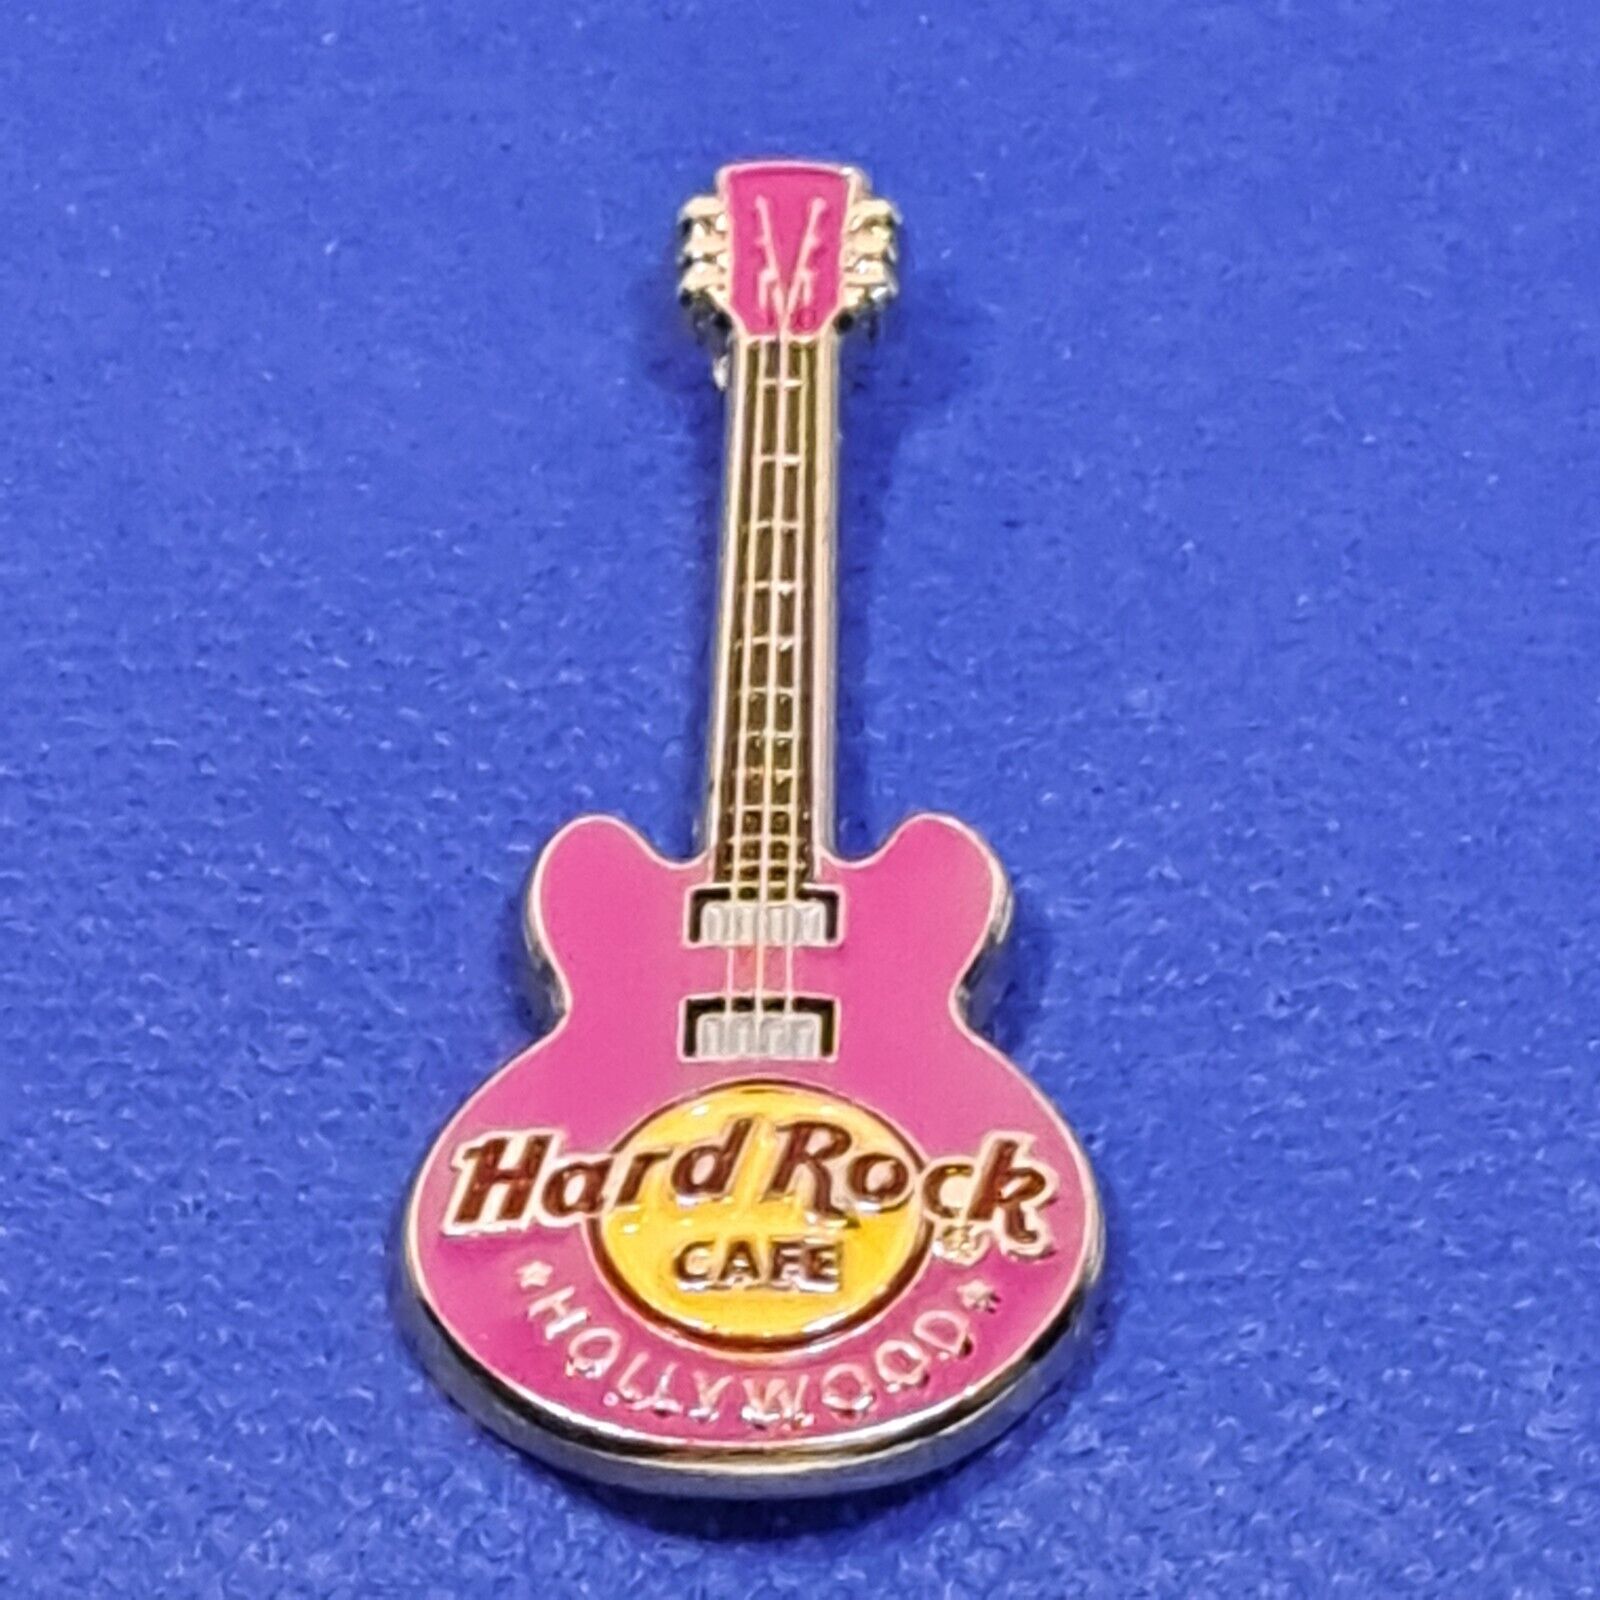 Hard Rock Cafe Hollywood California Pink Guitar Pin